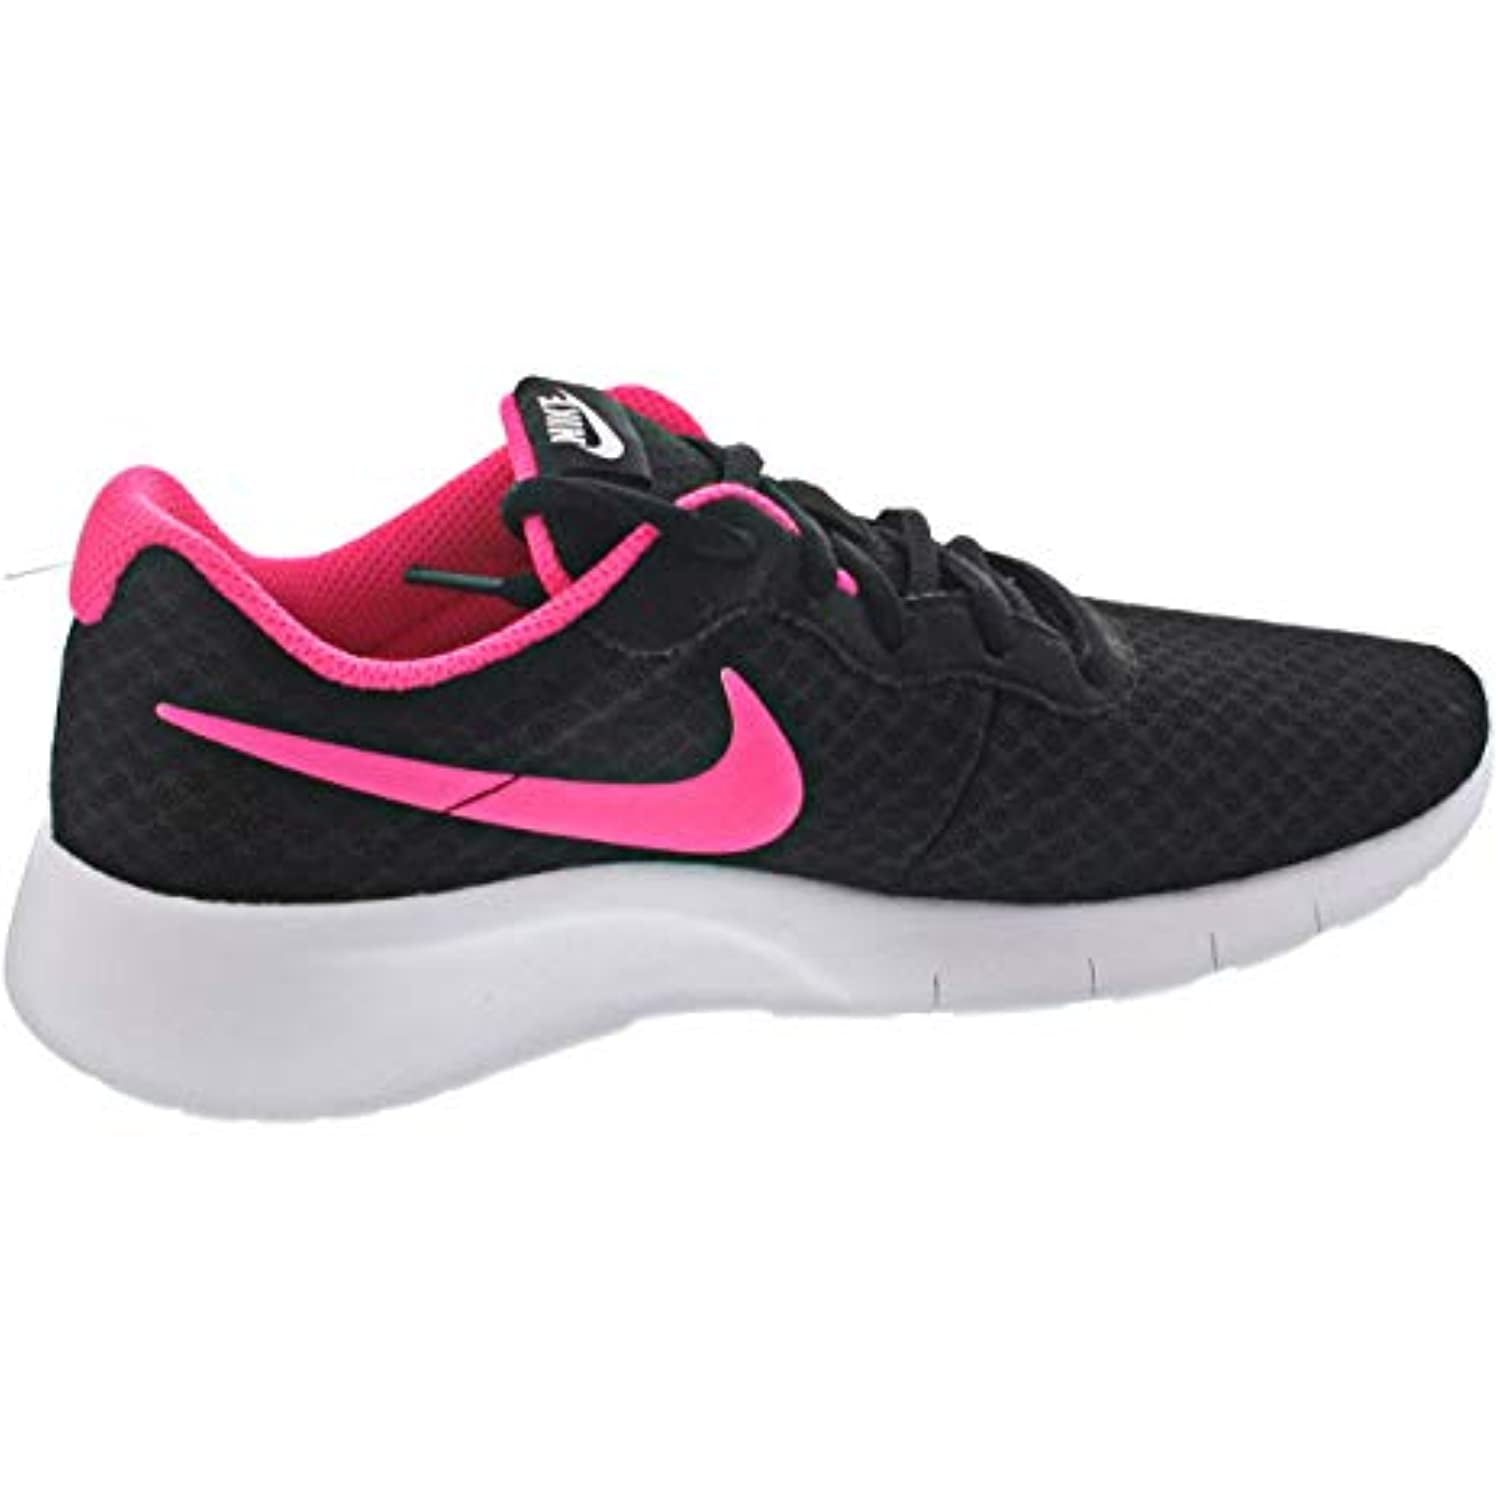 Nike Kids (GS) Pink White Running Shoe 4 Kids US -